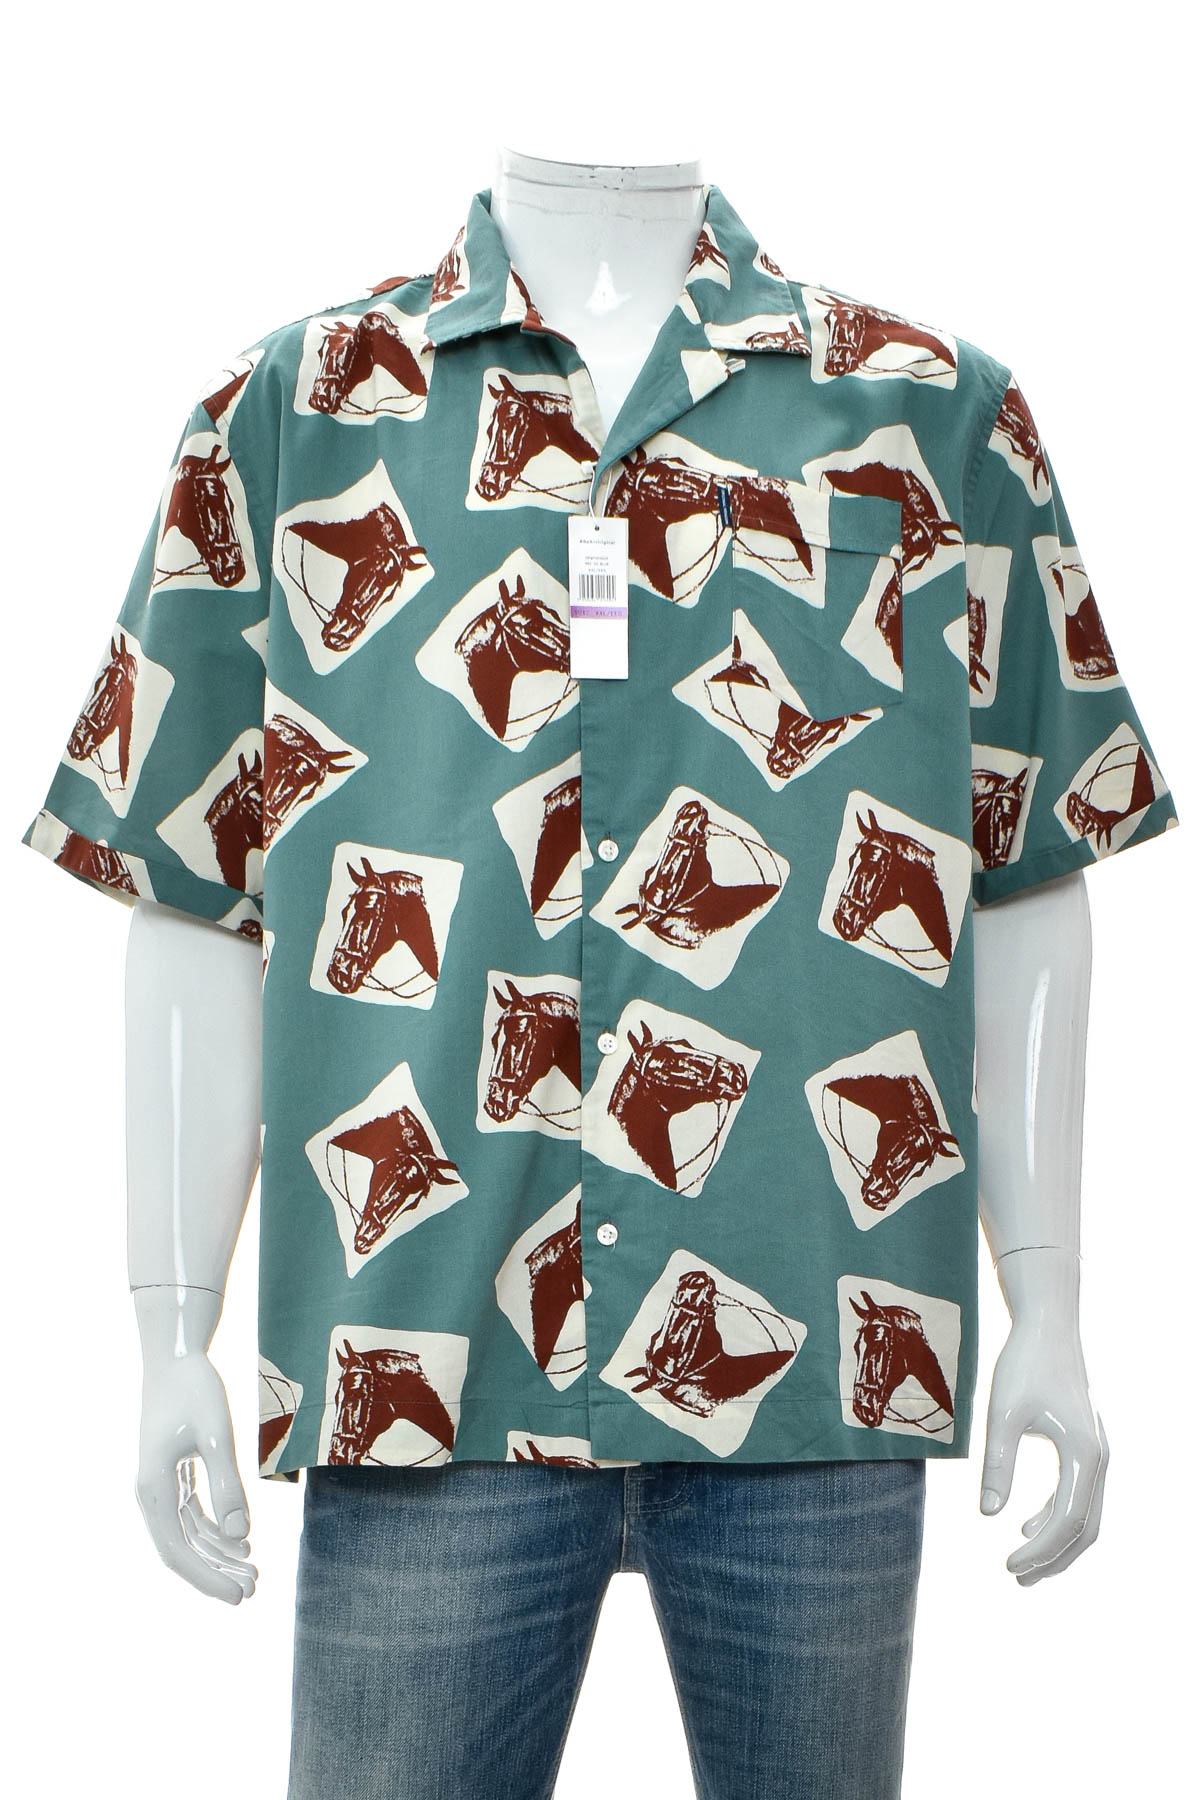 Men's shirt - Penguin - 0